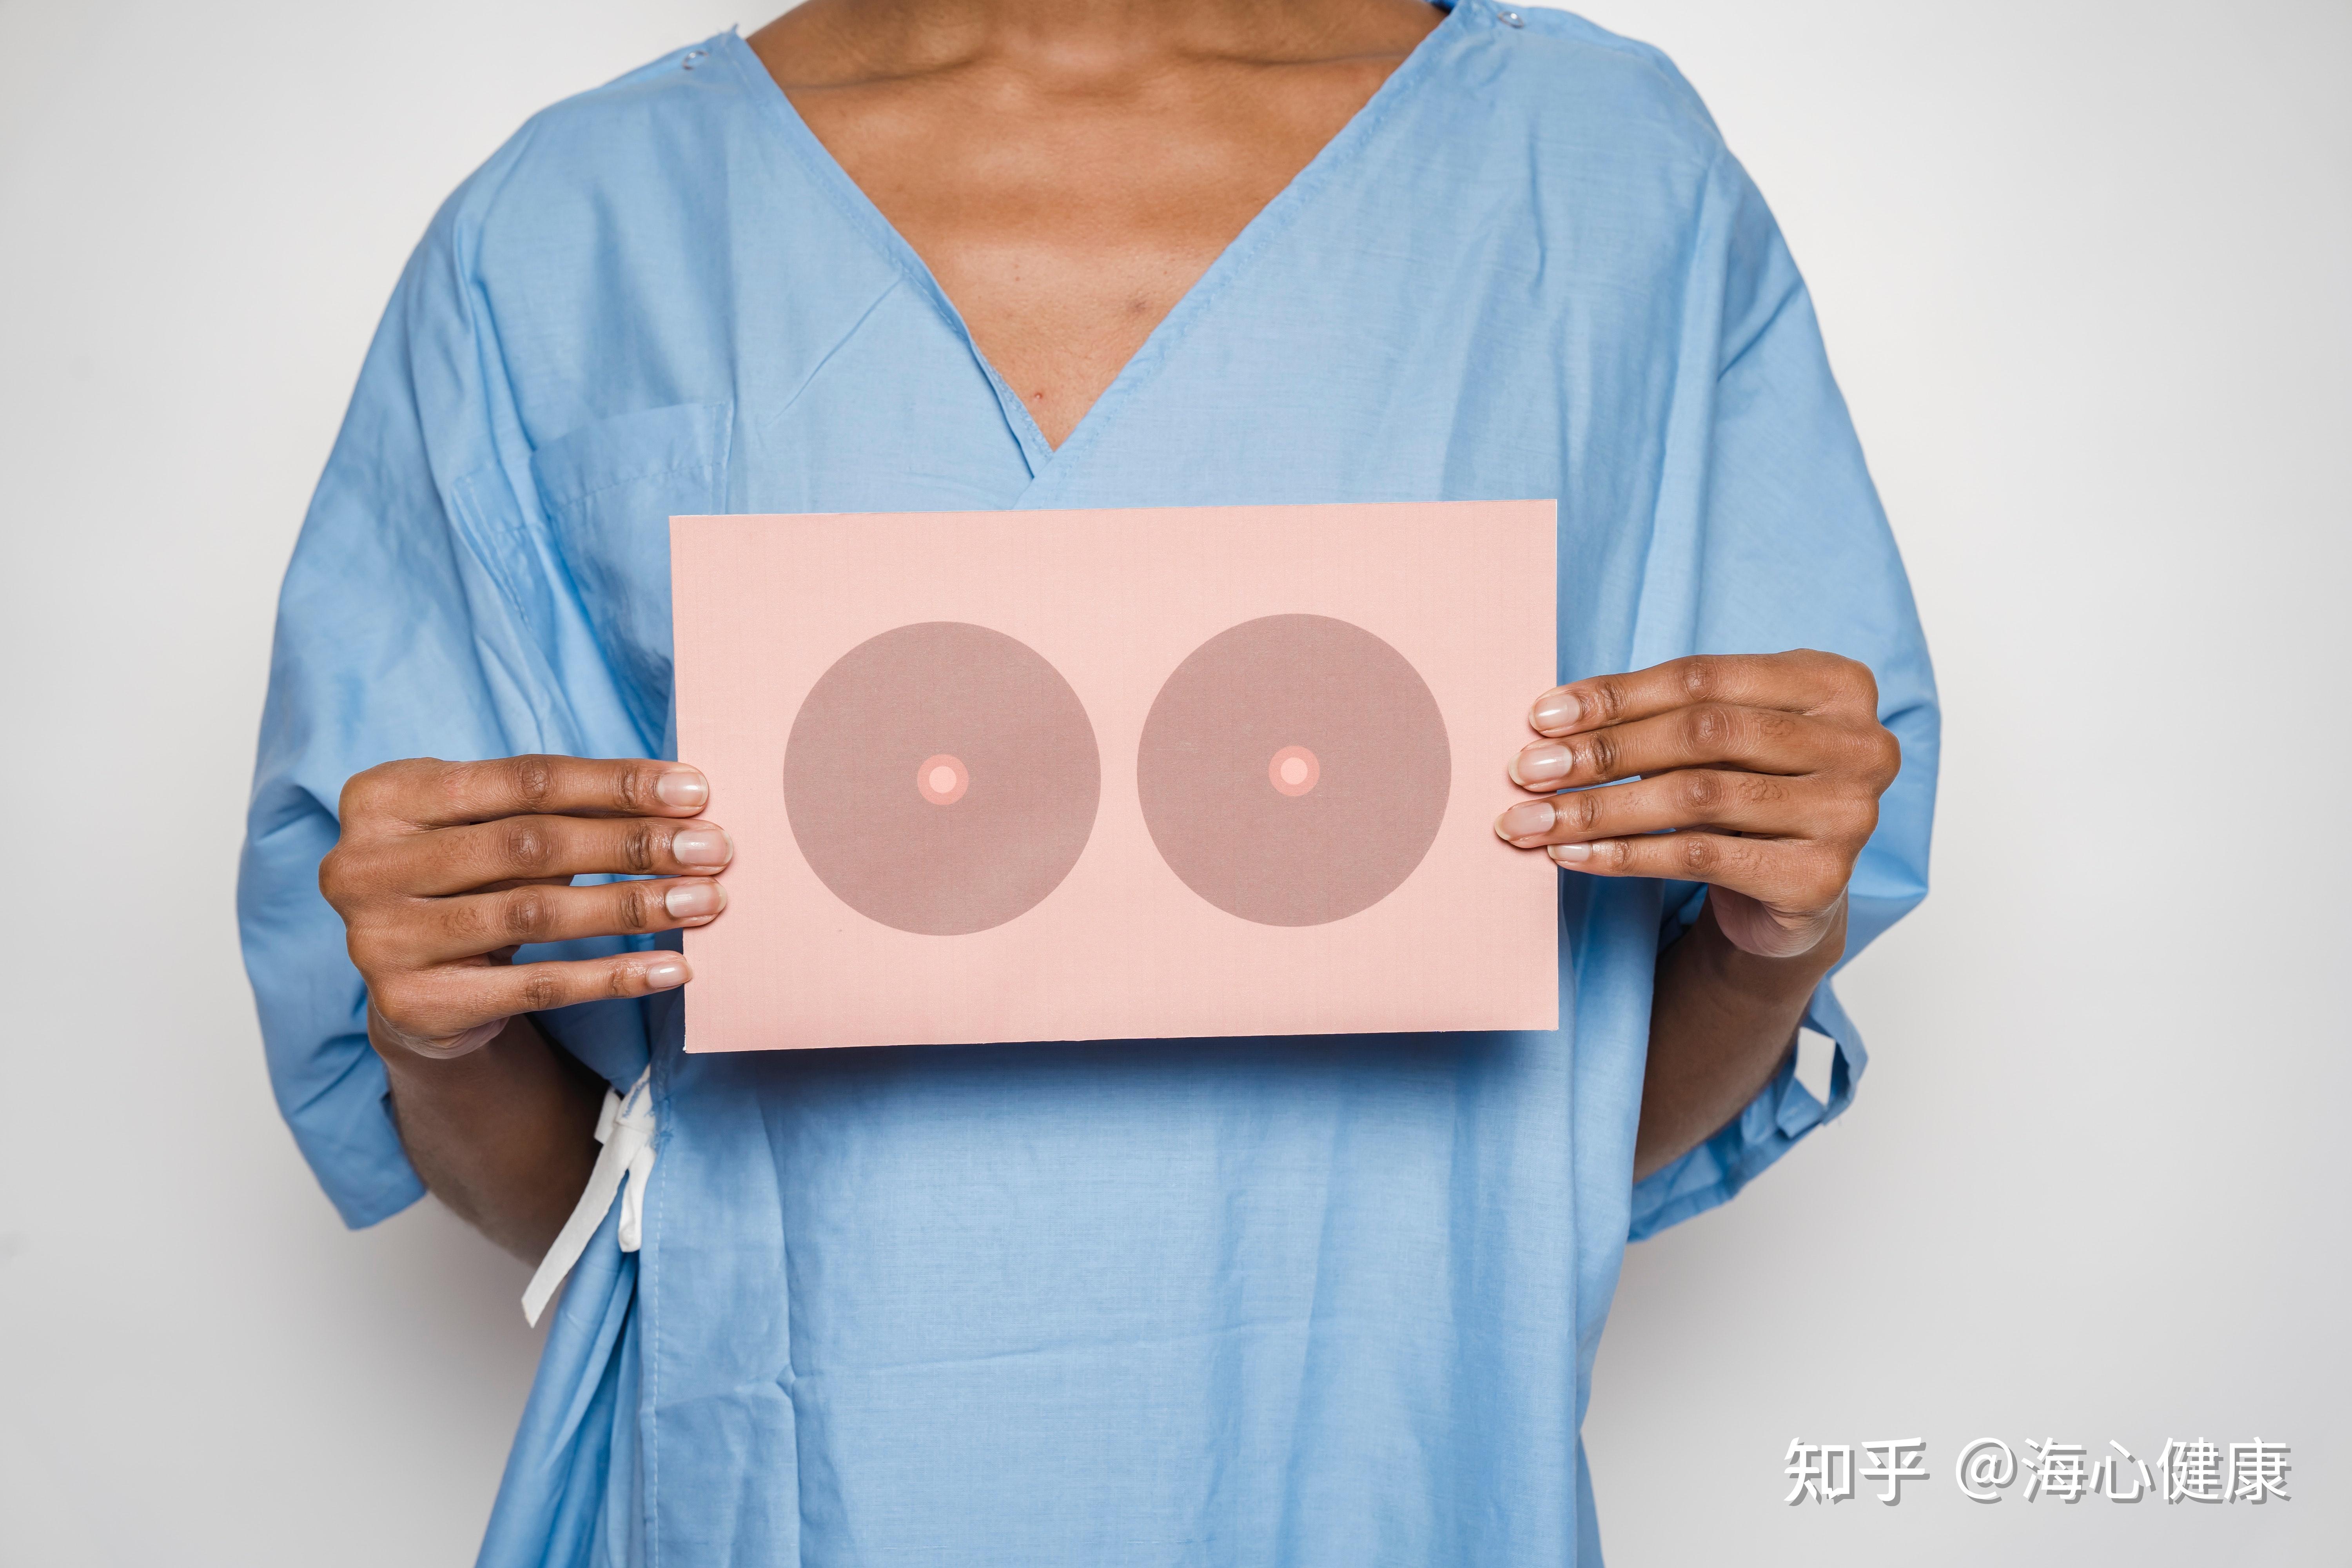 乳房重建材料大不同,乳腺癌患者该如何选择?